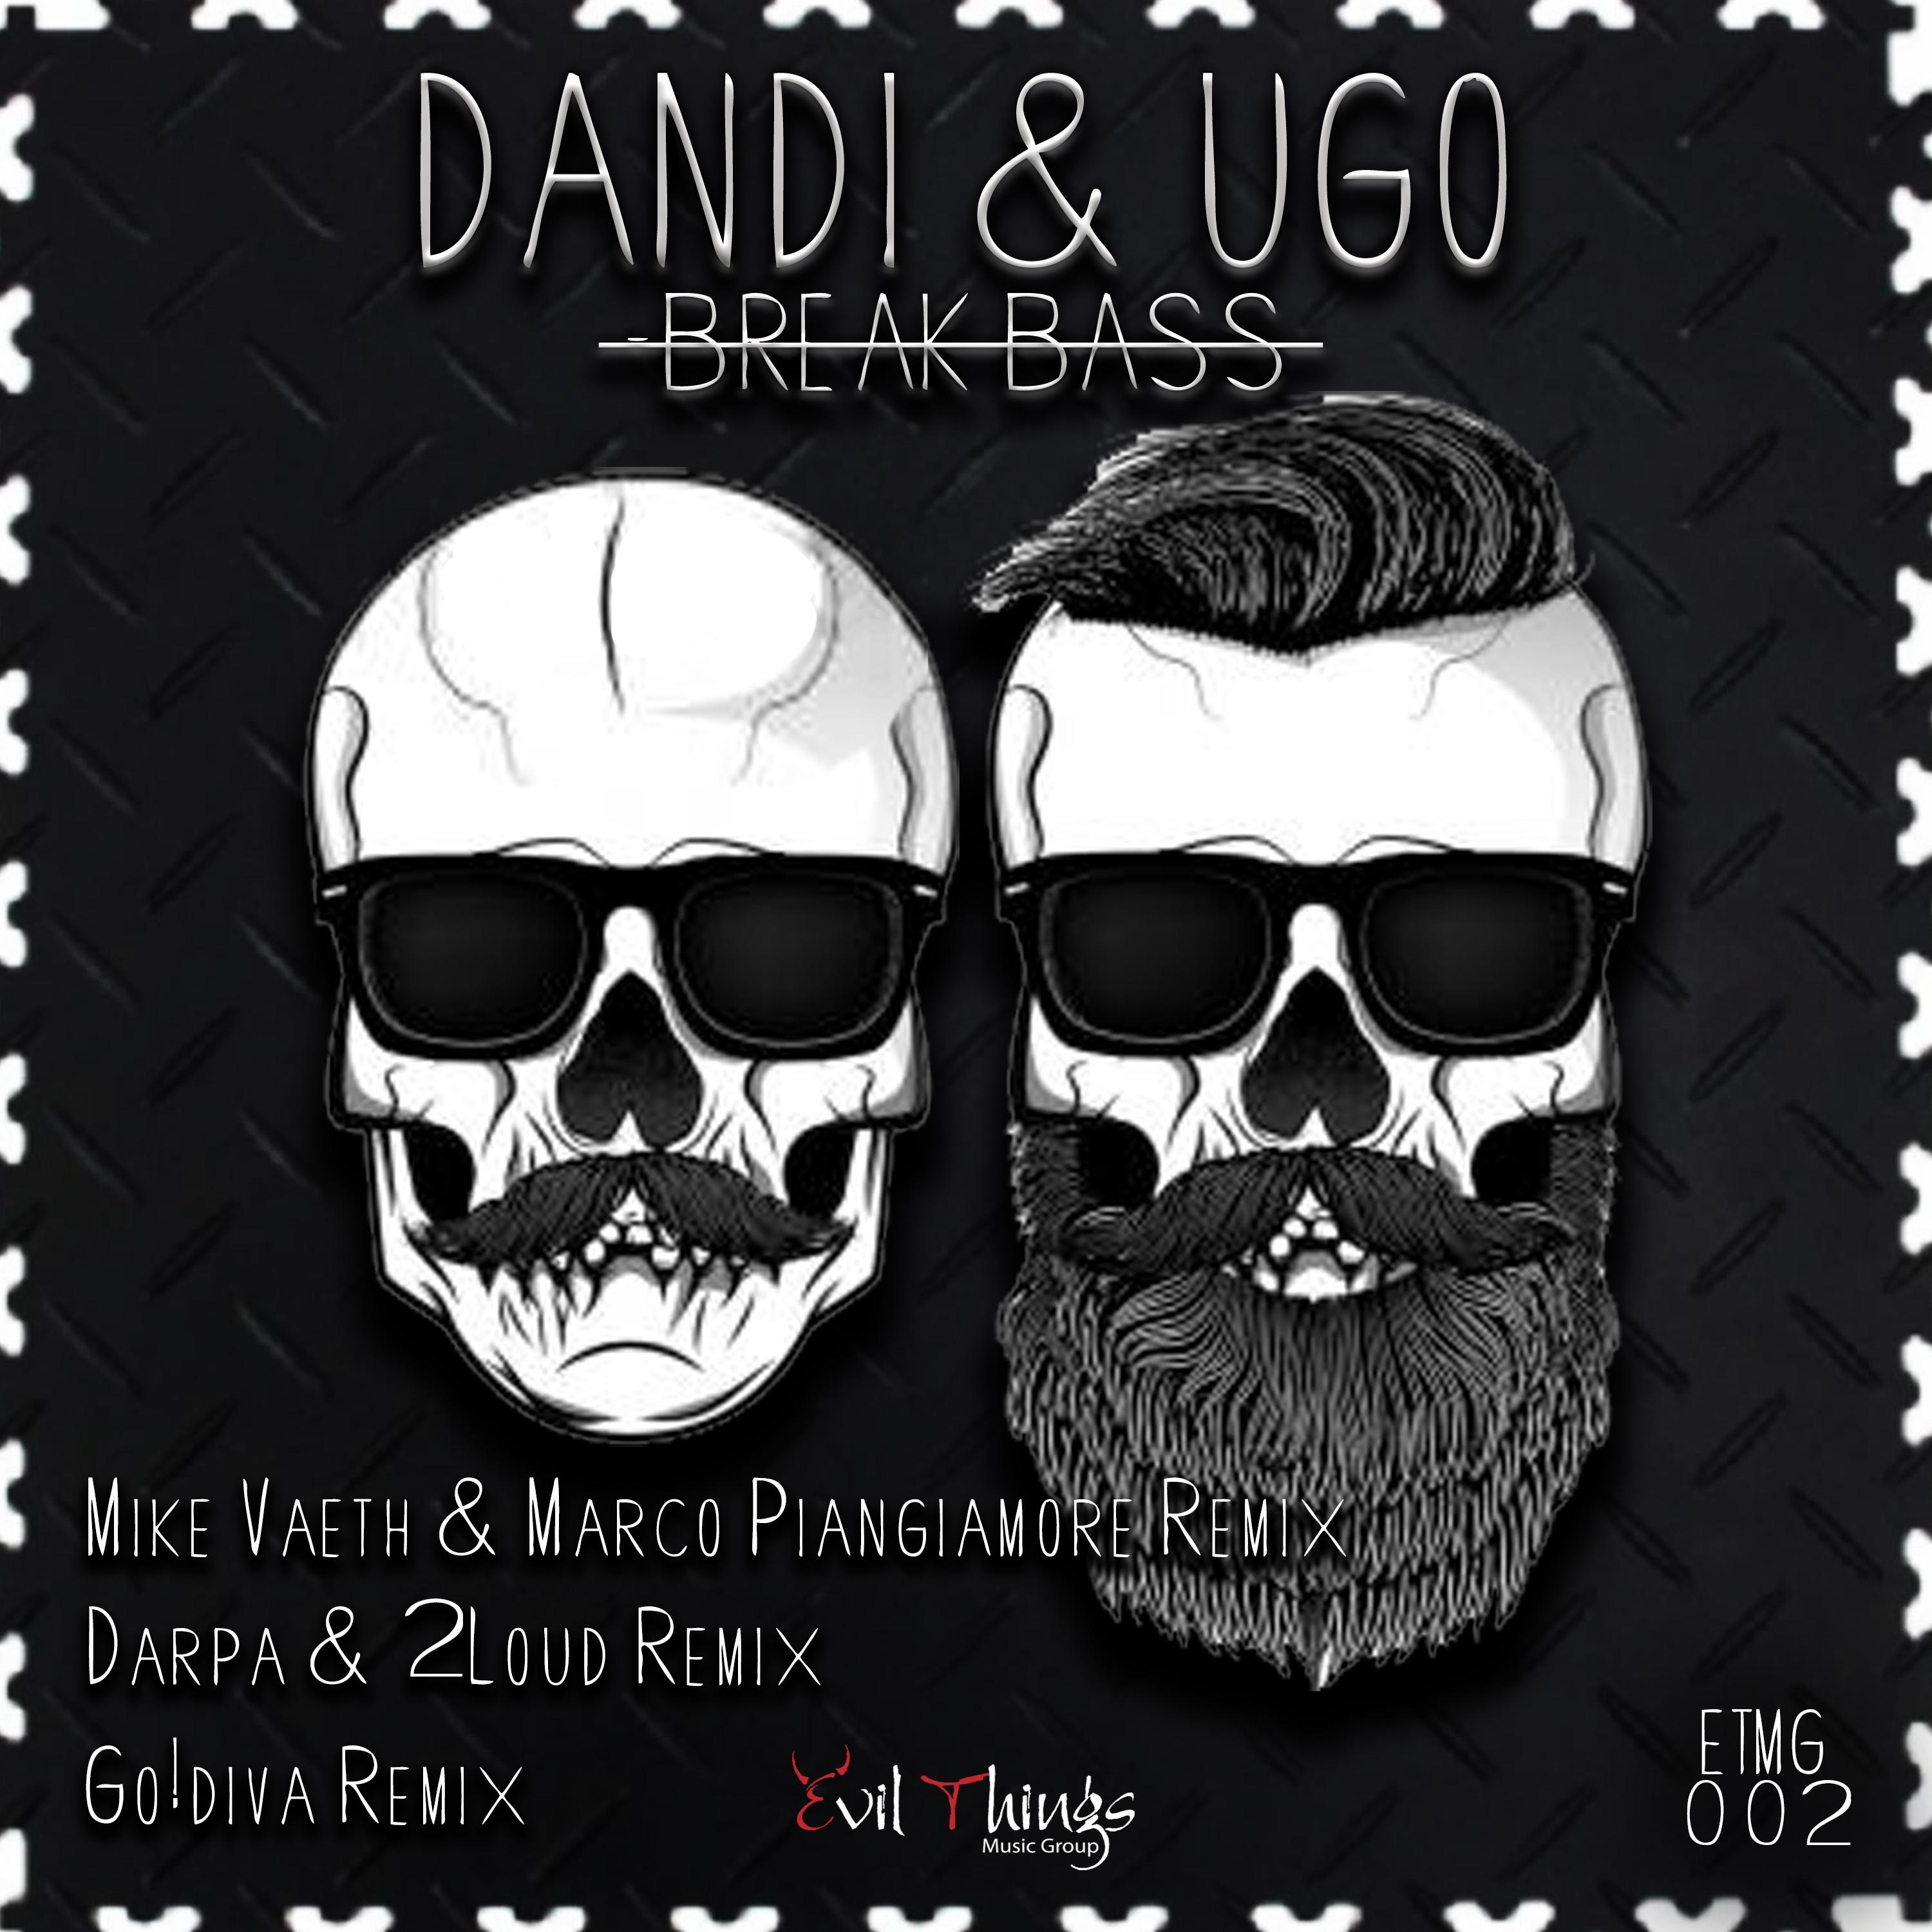 Break Bass (Go!diva Remix)